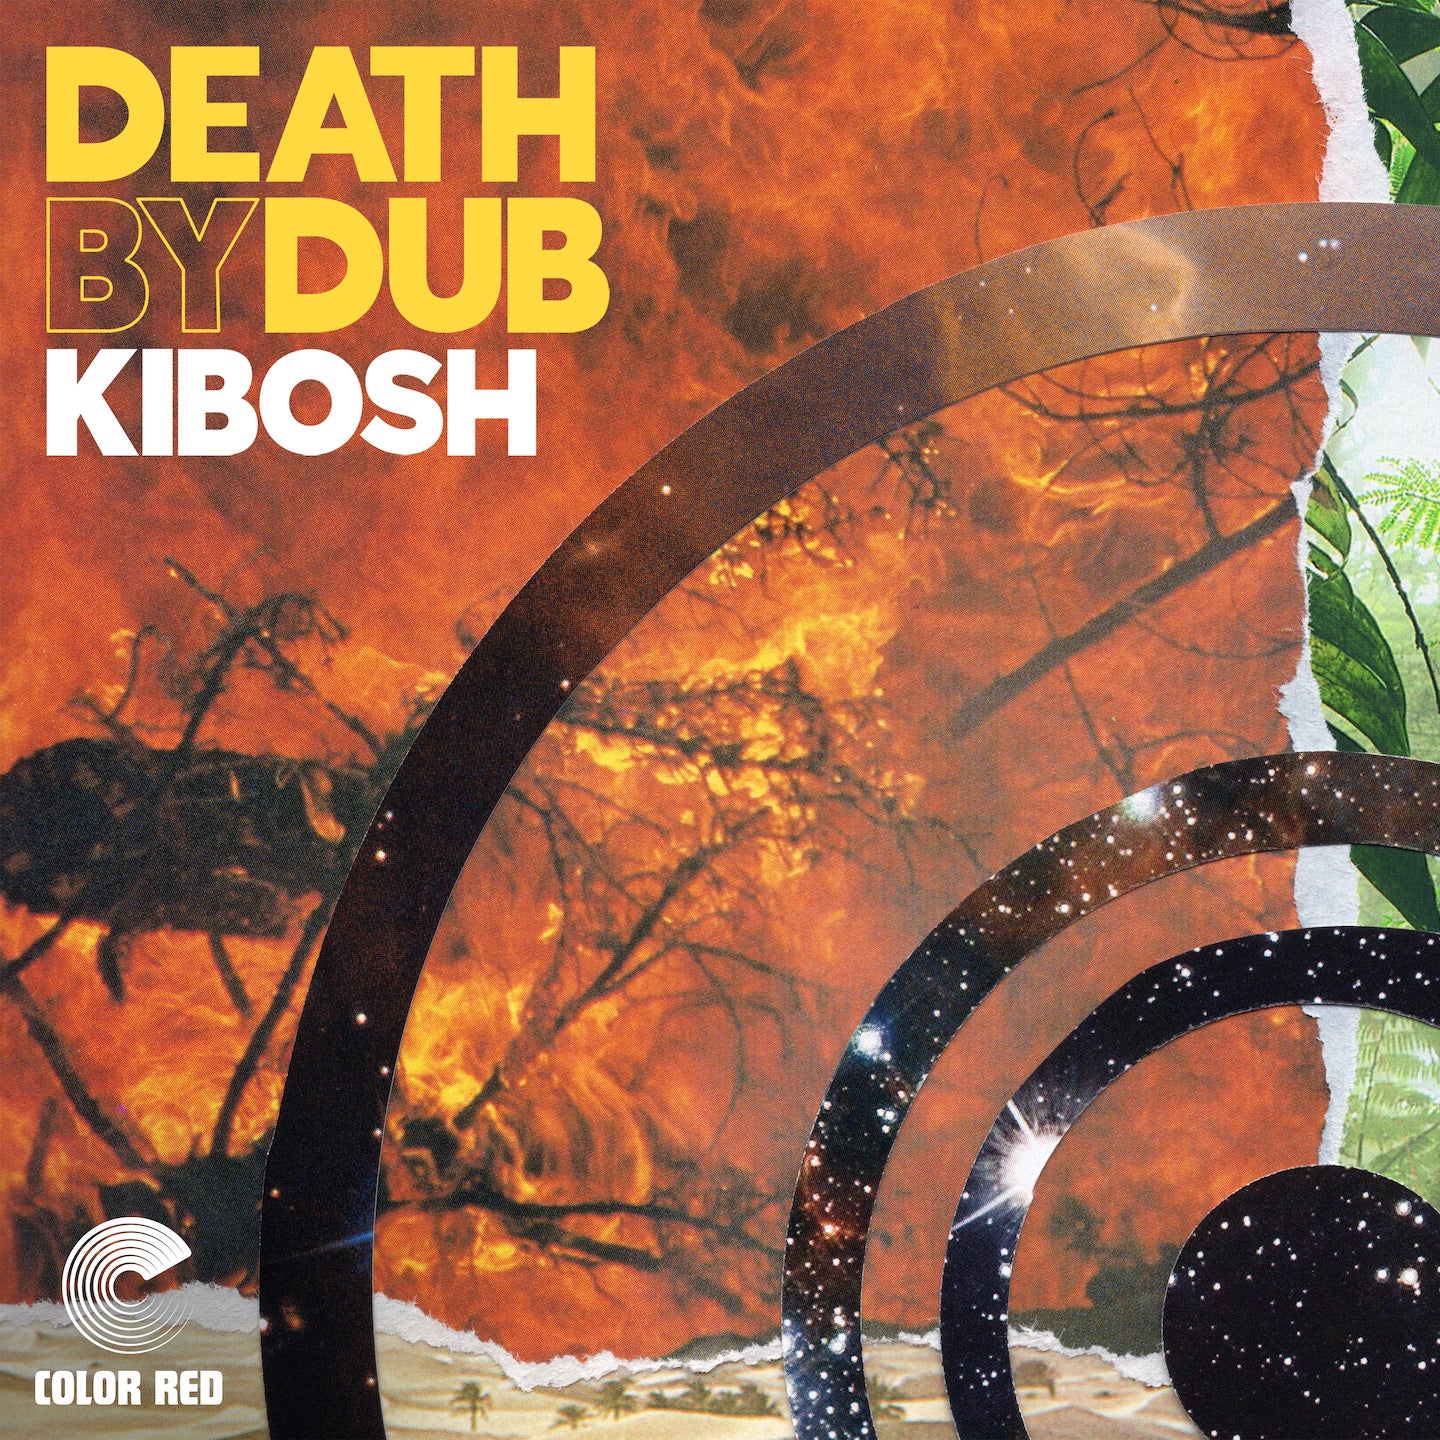 Kibosh